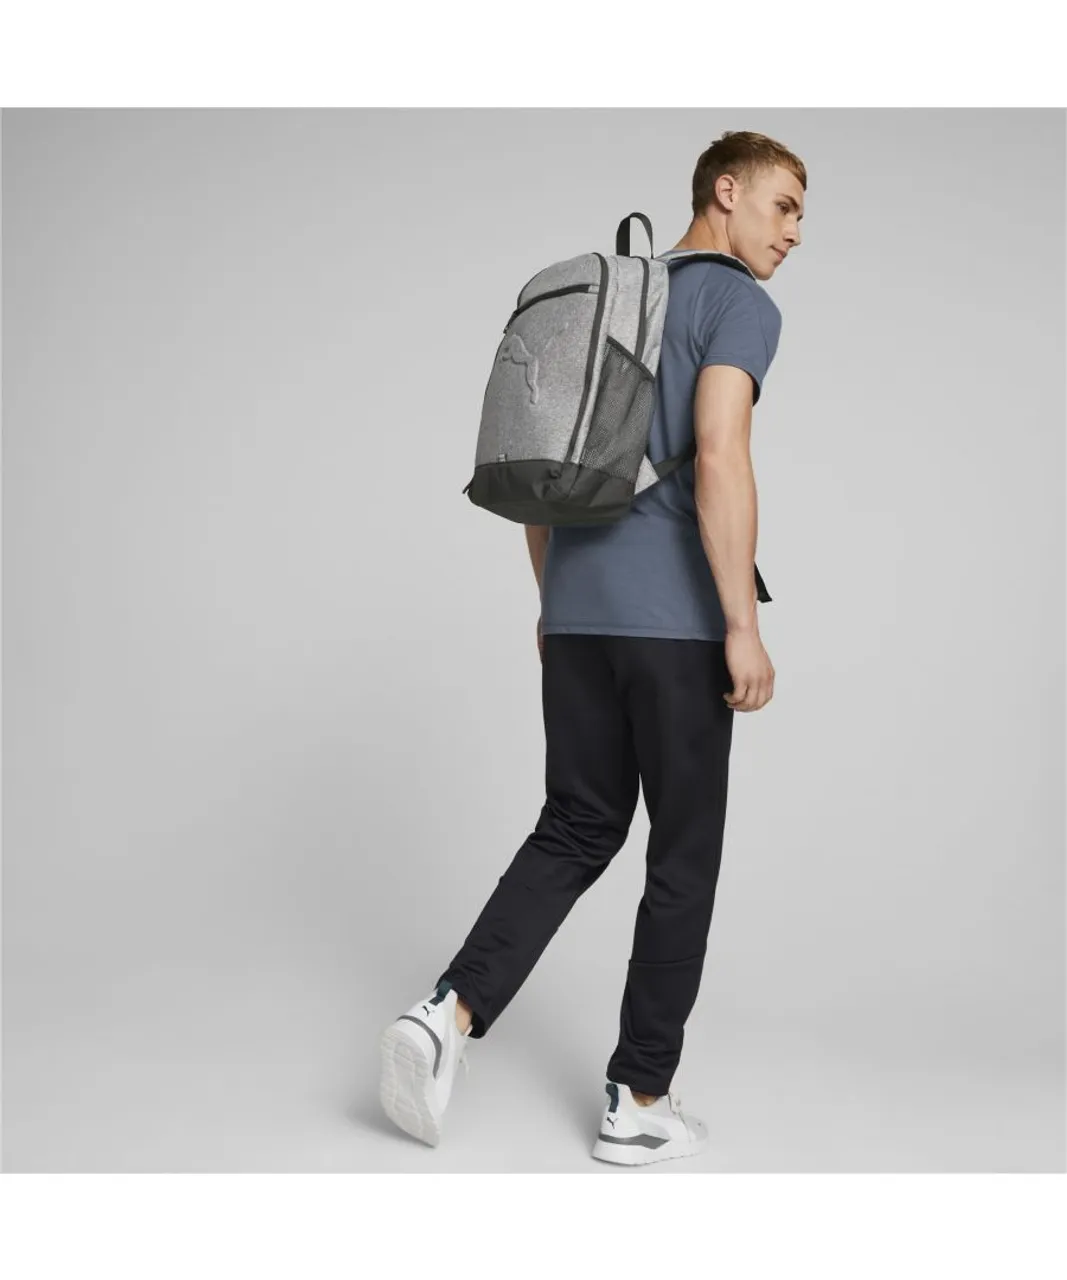 Puma Unisex Buzz Backpack - Grey Nylon - One Size